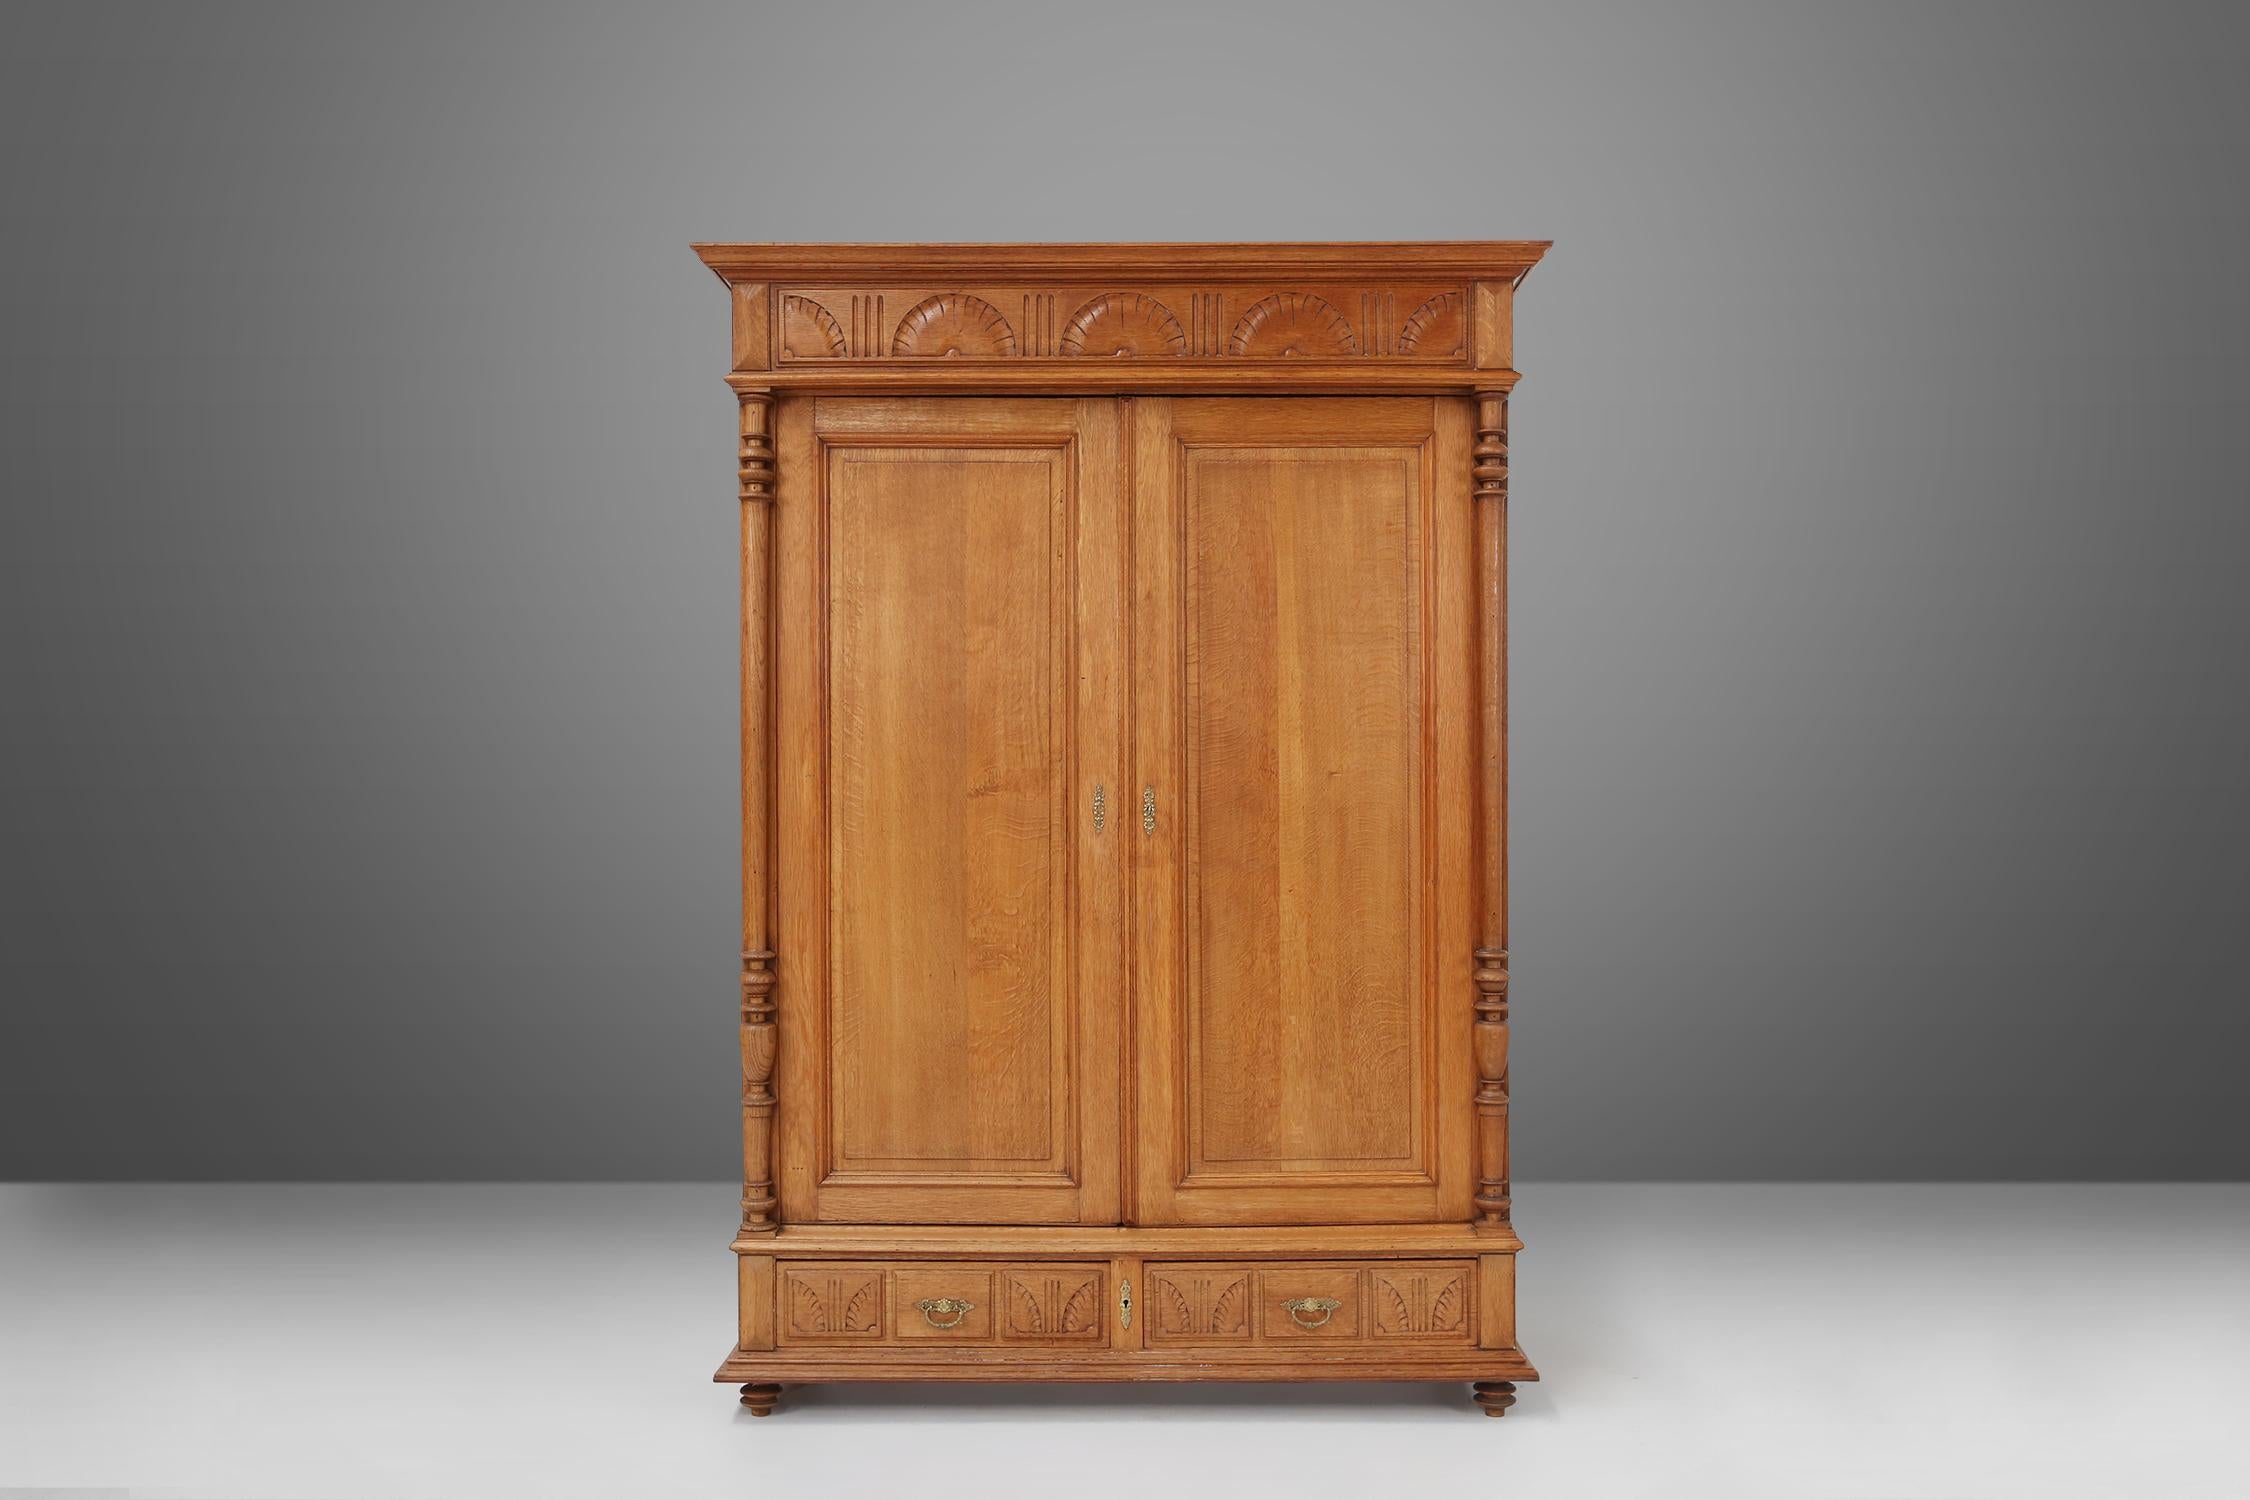 Cette superbe armoire ancienne en bois avec deux portes et deux tiroirs est un véritable chef-d'œuvre. Fabriquée avec une attention méticuleuse aux détails, cette armoire néo-renaissance met en valeur la beauté intemporelle des meubles en bois. Les